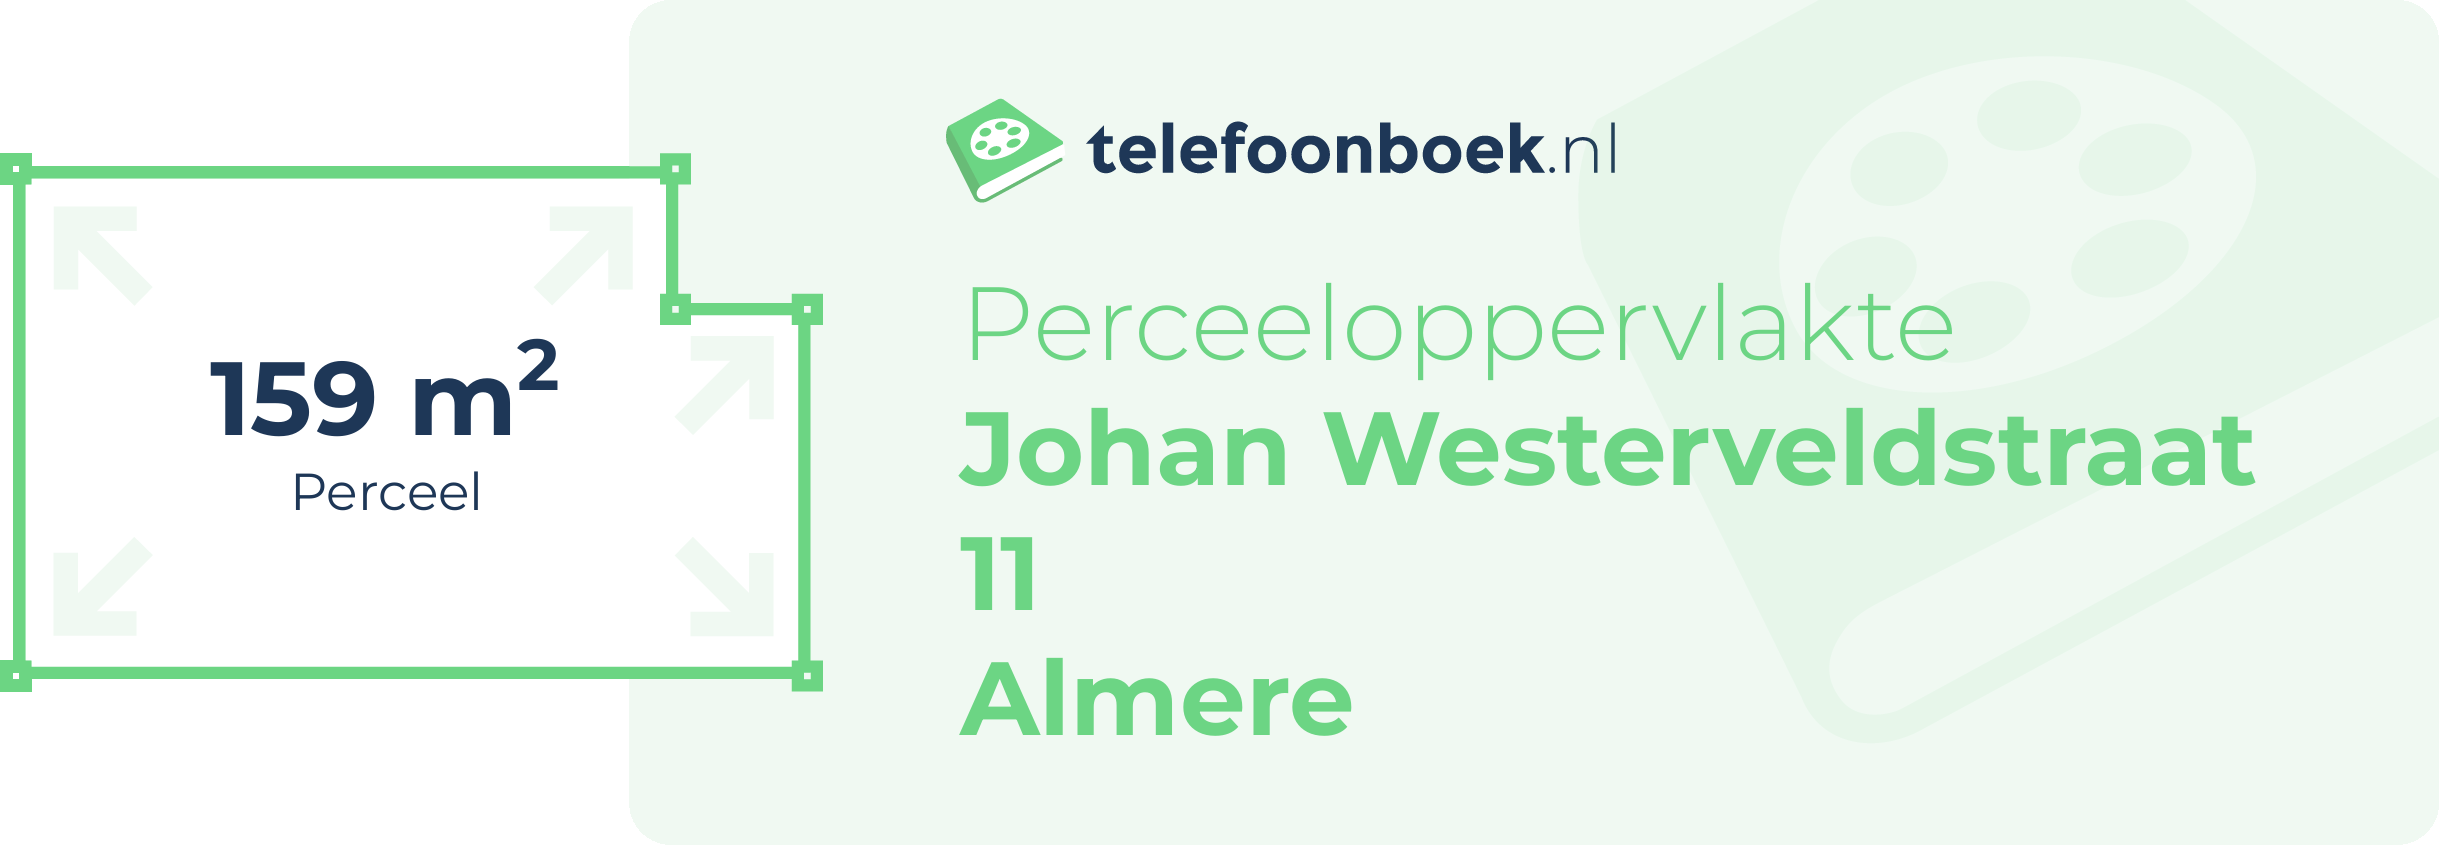 Perceeloppervlakte Johan Westerveldstraat 11 Almere